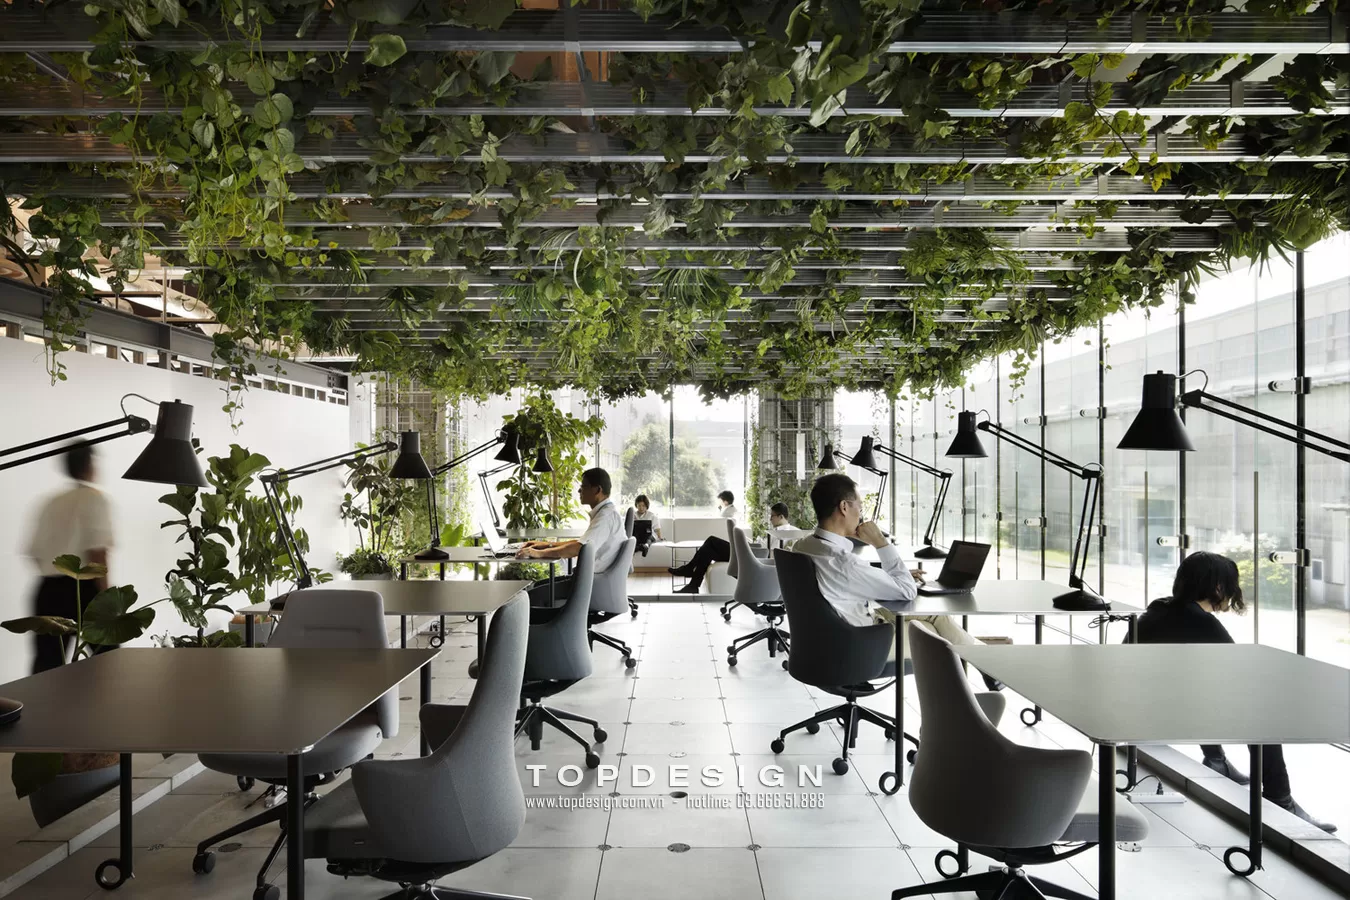 5. Thiết kế cây xanh trong văn phòng - Topdesign